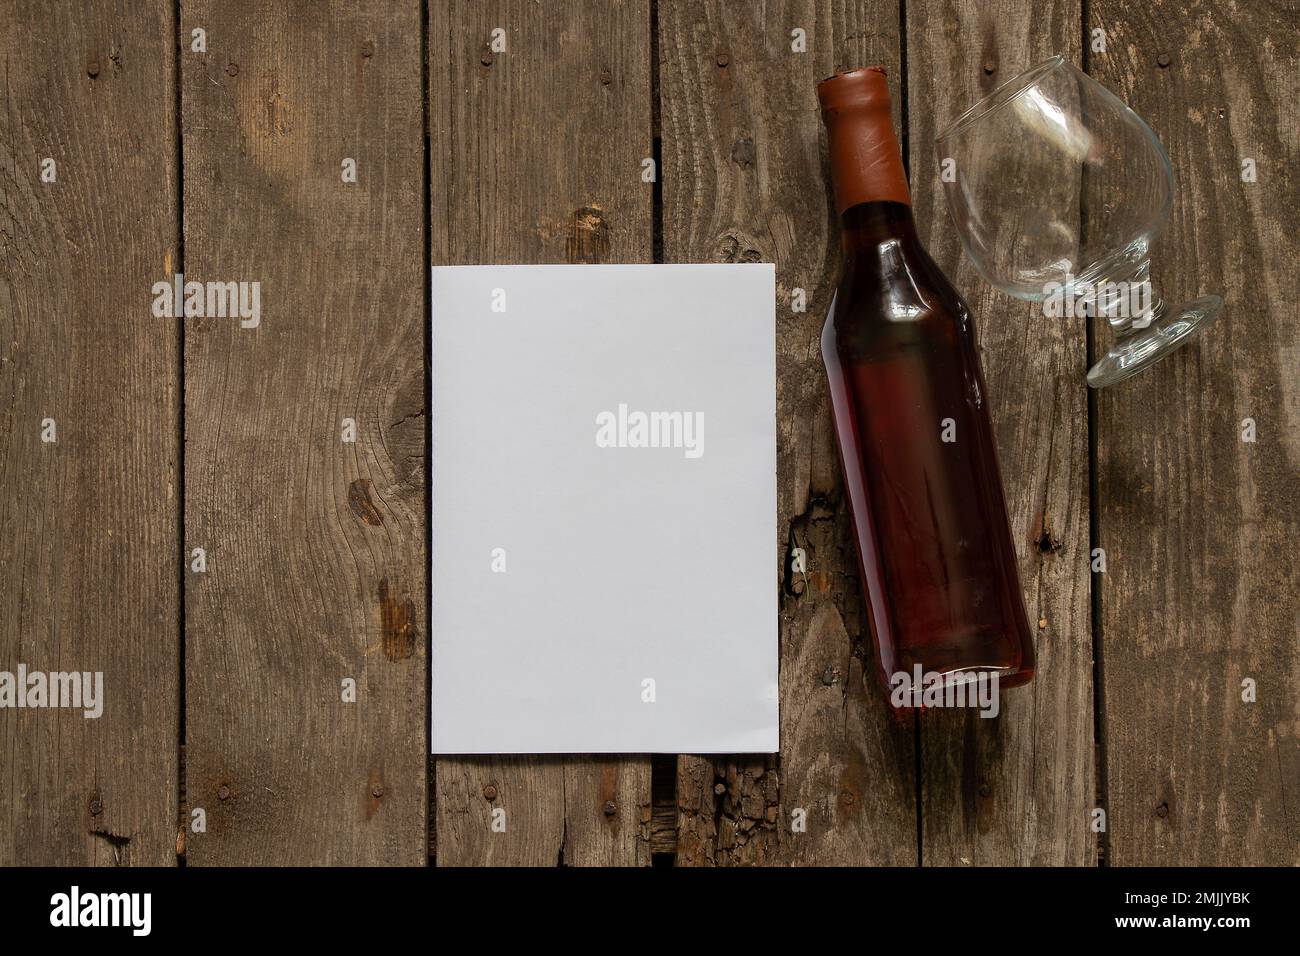 bouteille de vieux verre de whisky et feuille blanche vide pour le texte sur une table Banque D'Images